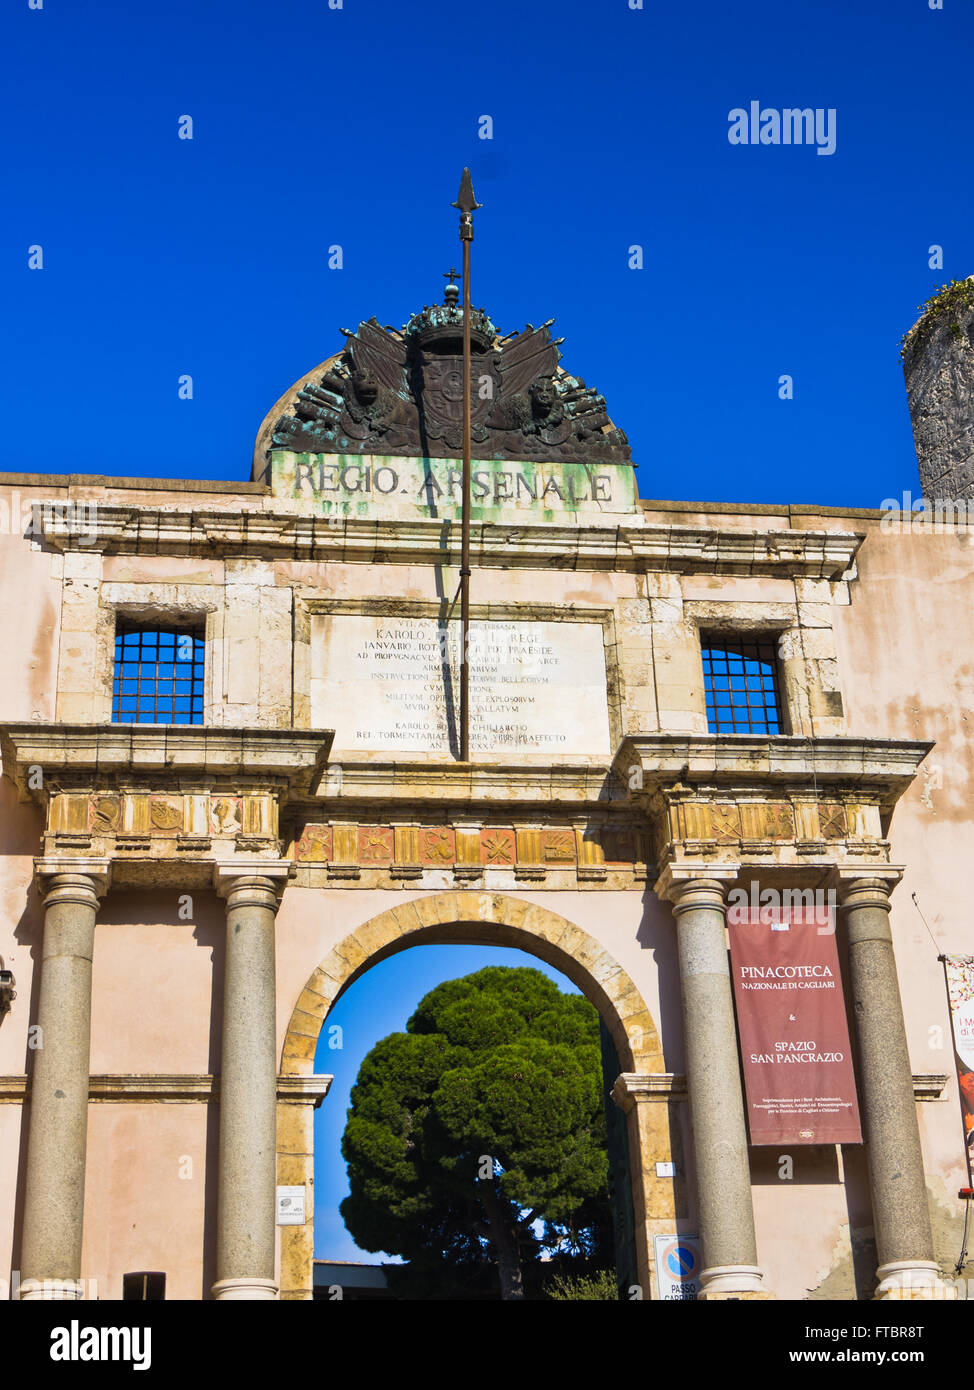 L'arsenale Regio portail de la place de la ville et entrée au musée archéologique dans le centre-ville de Cagliari, Sardaigne Banque D'Images